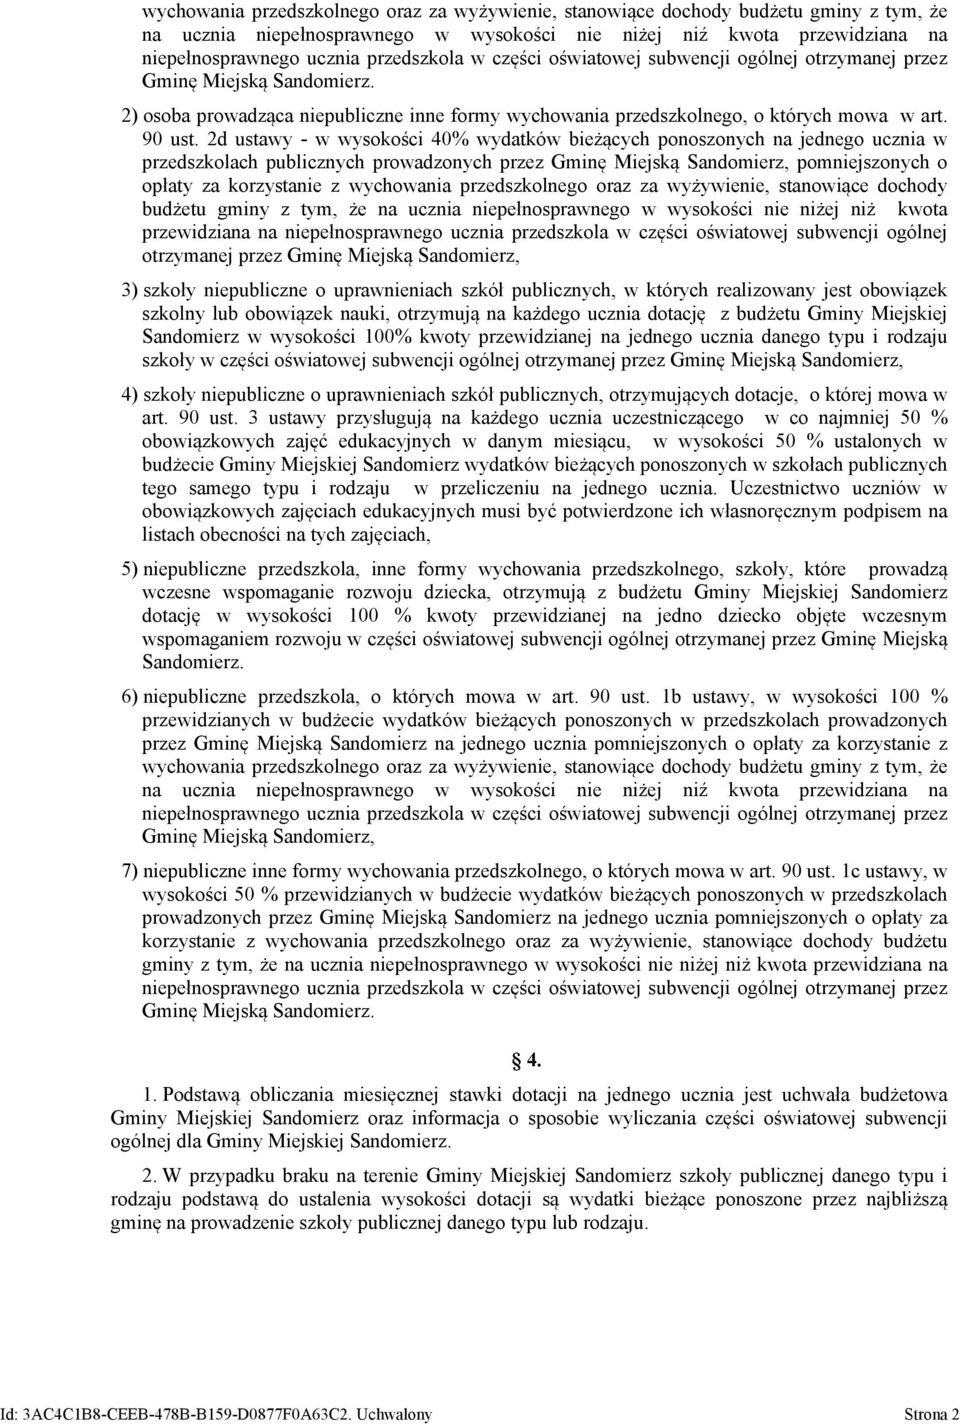 2d ustawy - w wysokości 40% wydatków bieżących ponoszonych na jednego ucznia w przedszkolach publicznych prowadzonych przez Gminę Miejską Sandomierz, pomniejszonych o opłaty za korzystanie z